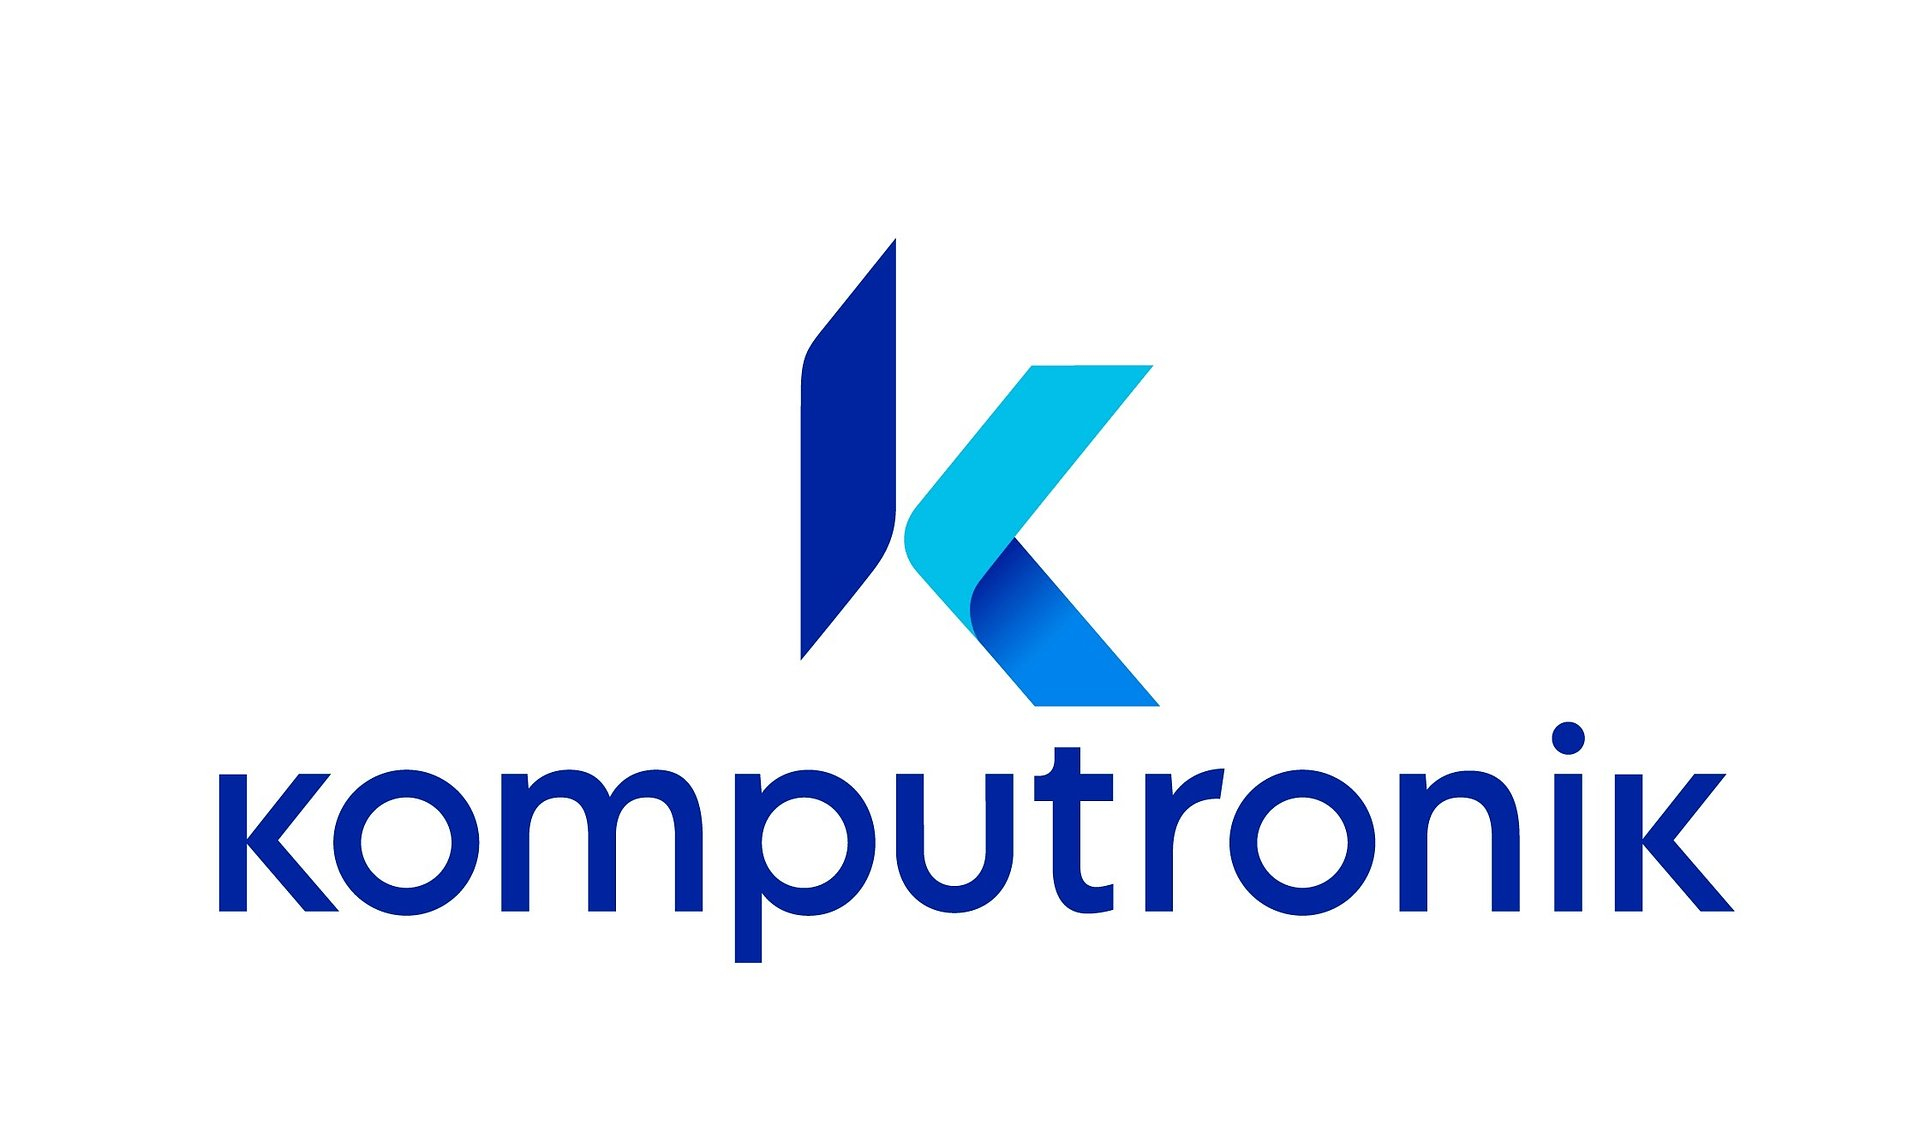 komputronik-logo